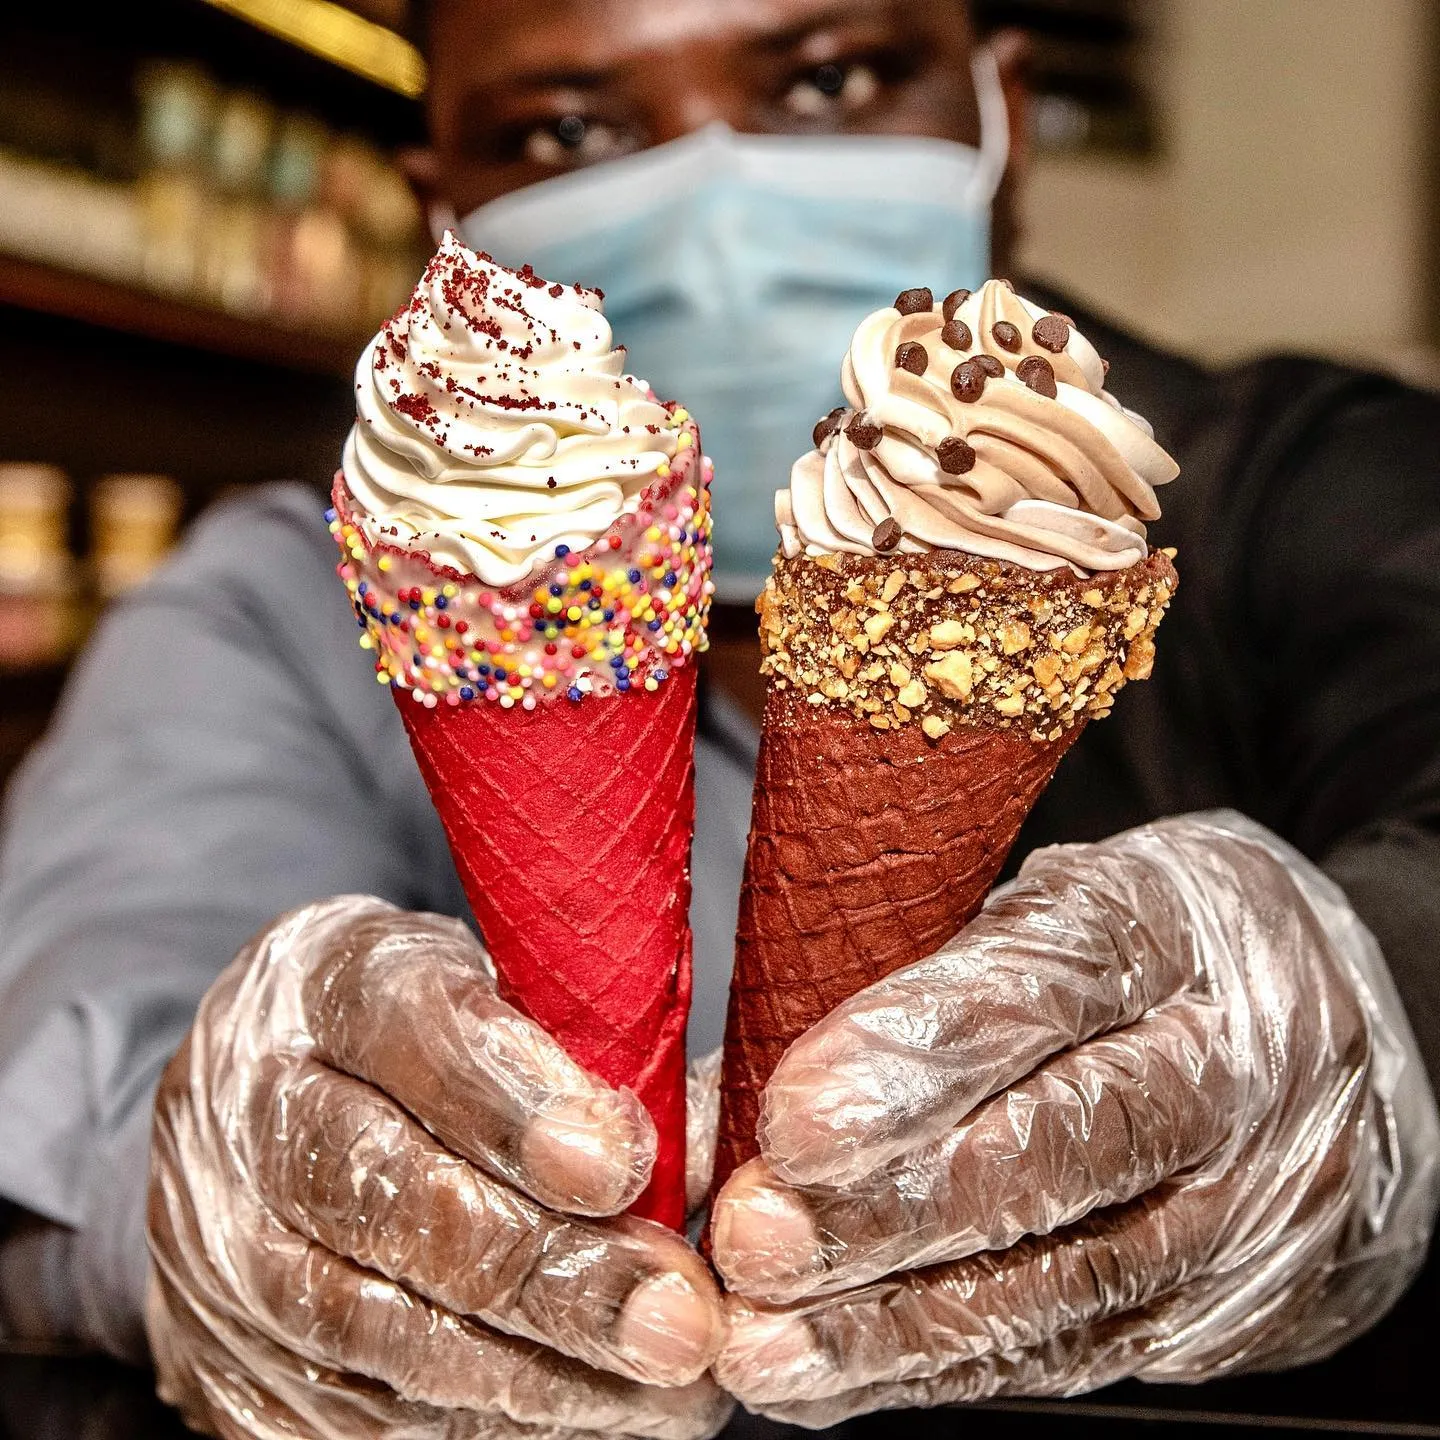 The Best Ice Cream Spots in Lagos, Nigeria